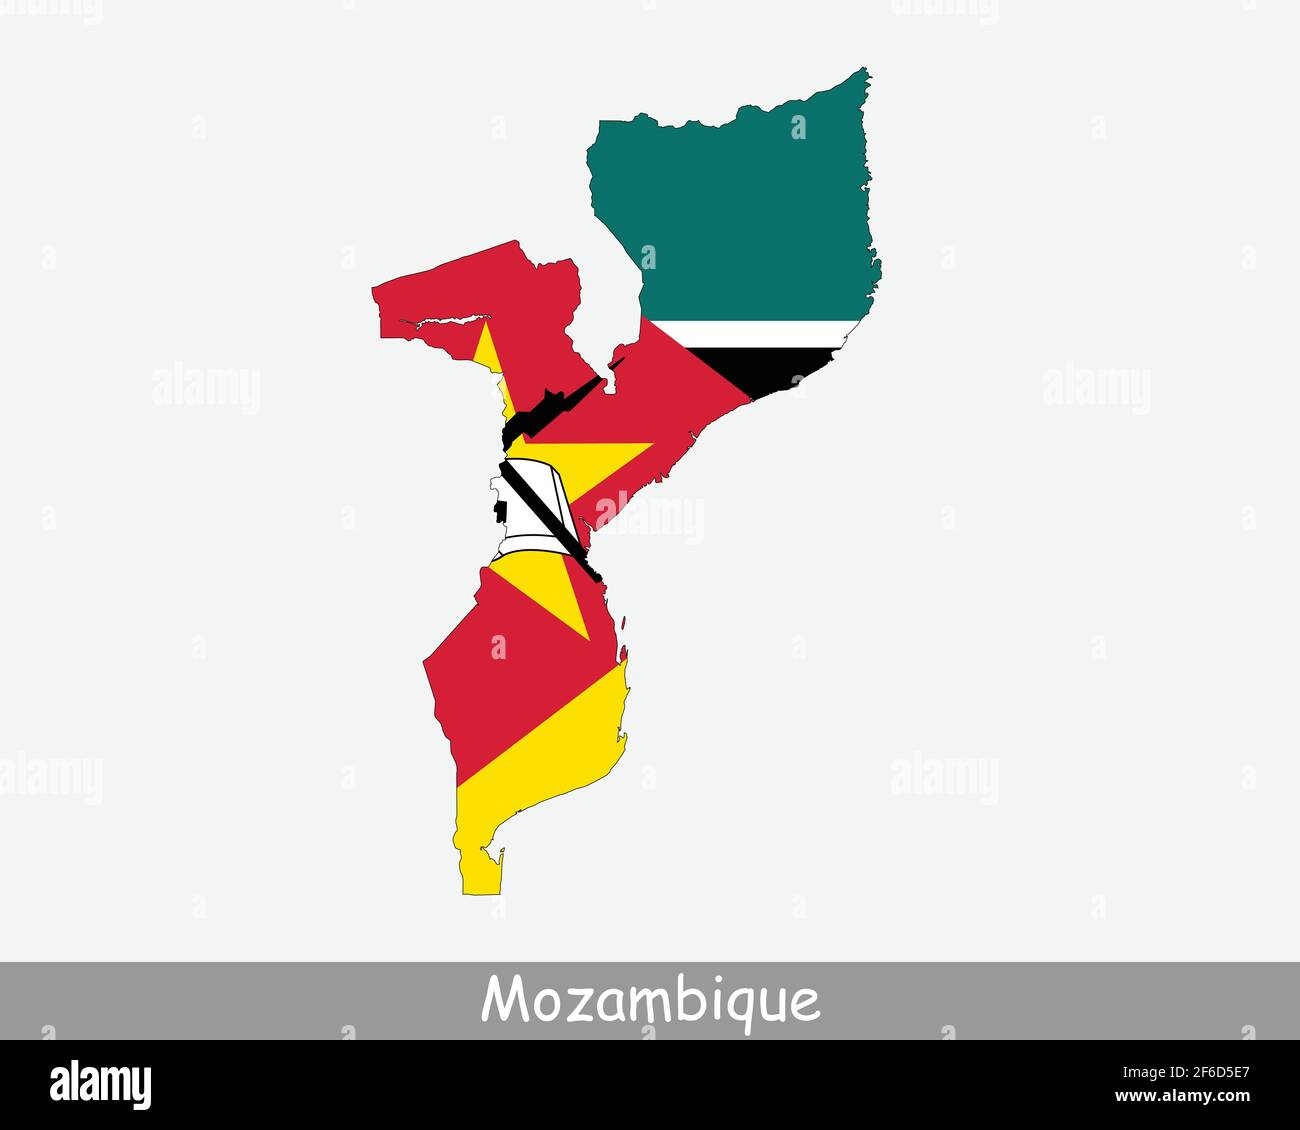 Mappa Bandiera del Mozambico. Mappa della Repubblica del Mozambico con la bandiera nazionale mozambicana isolata su sfondo bianco. Illustrazione vettoriale. Illustrazione Vettoriale